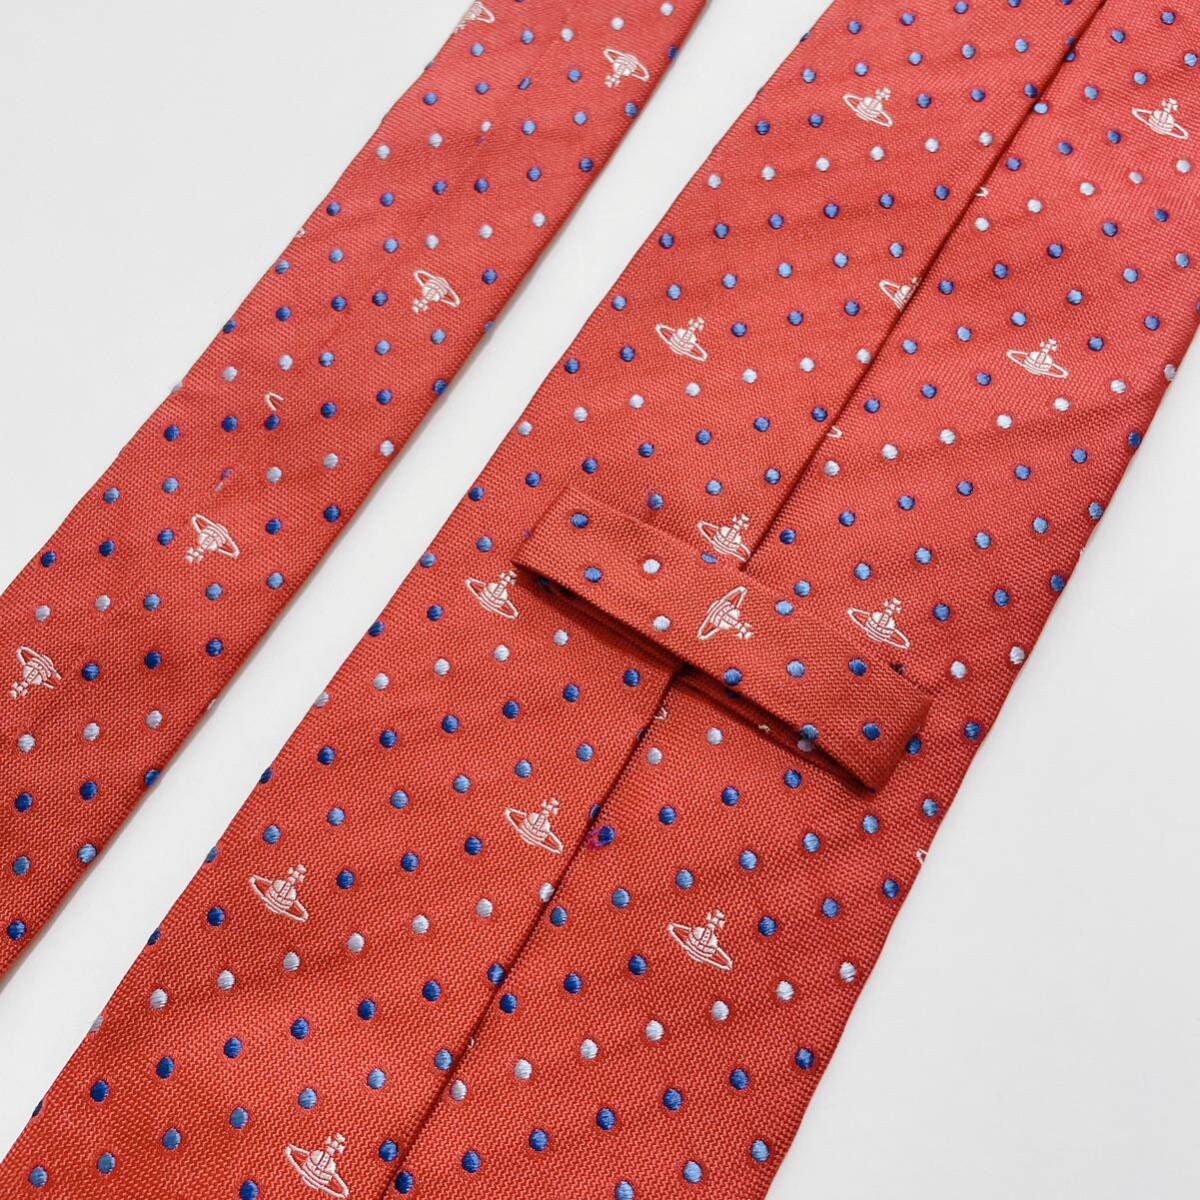  прекрасный товар Vivienne Westwood галстук высокий бренд o-b Logo точка рисунок 